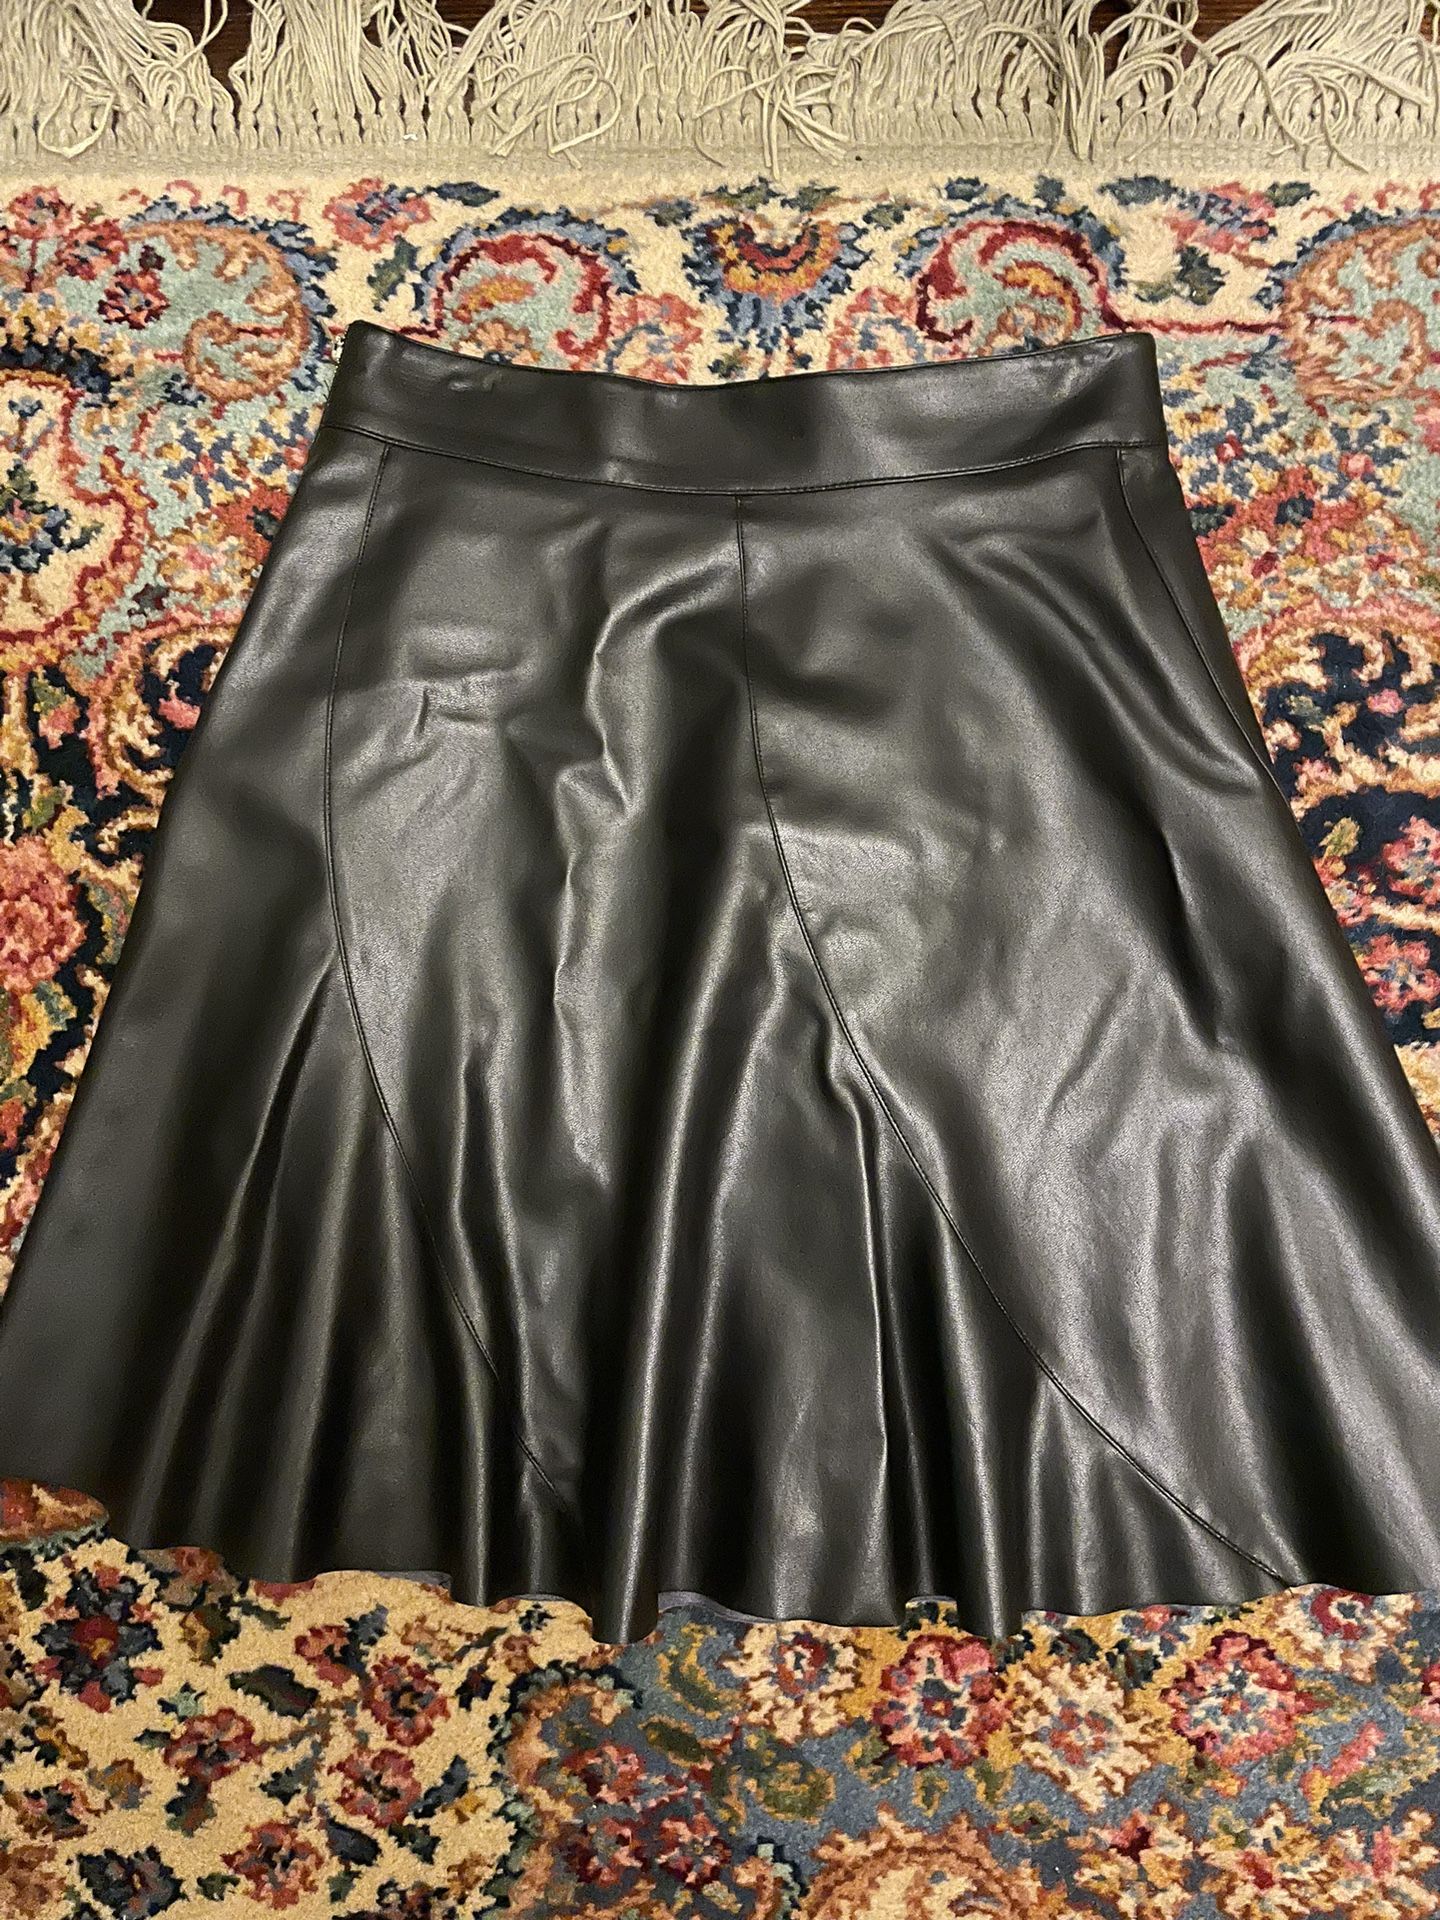 Bailey 44 vegan leather skirt, 4